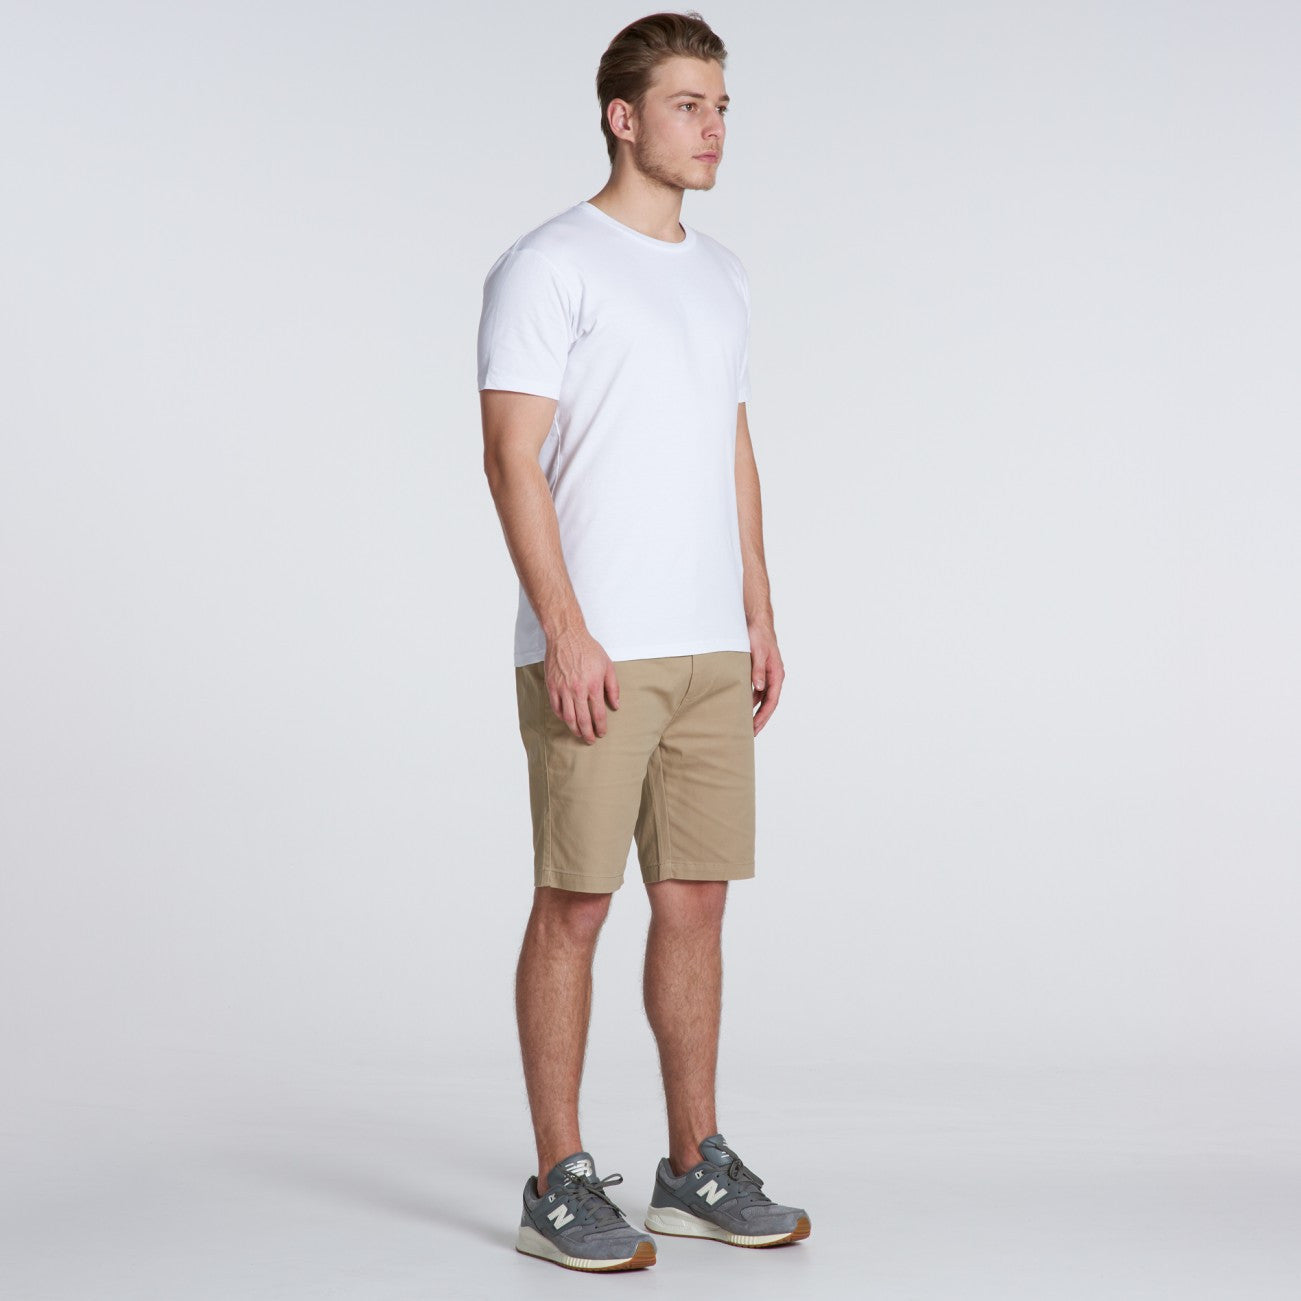 Ascolour Plain Shorts-(5902)